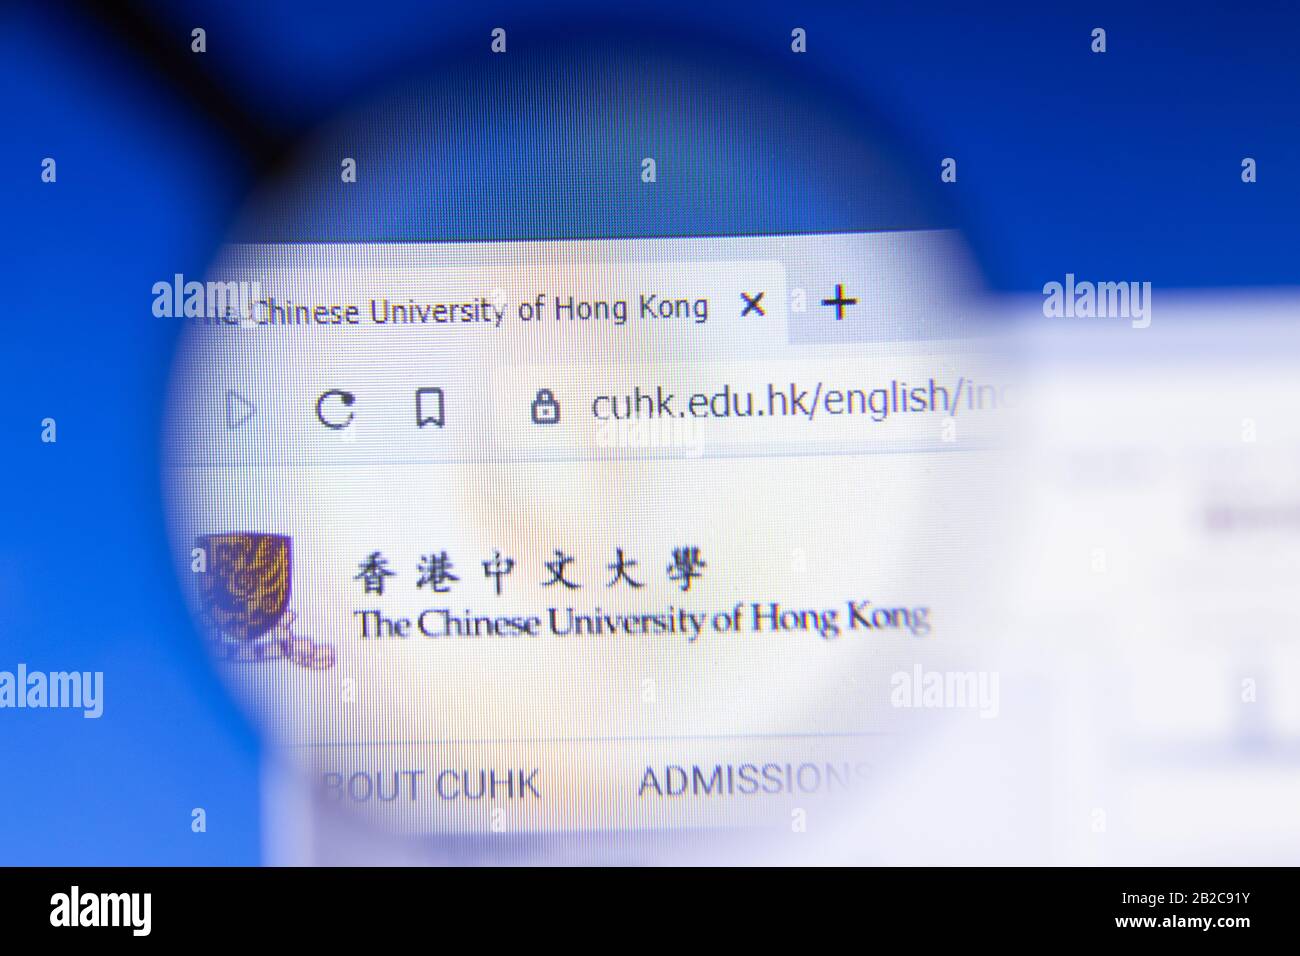 Los Angeles, Kalifornien, USA - 3. März 2020: Das Logo der CUHK-Website der chinesischen Universität Hongkong wird auf dem Bildschirm zur Veranschaulichung angezeigt Stockfoto